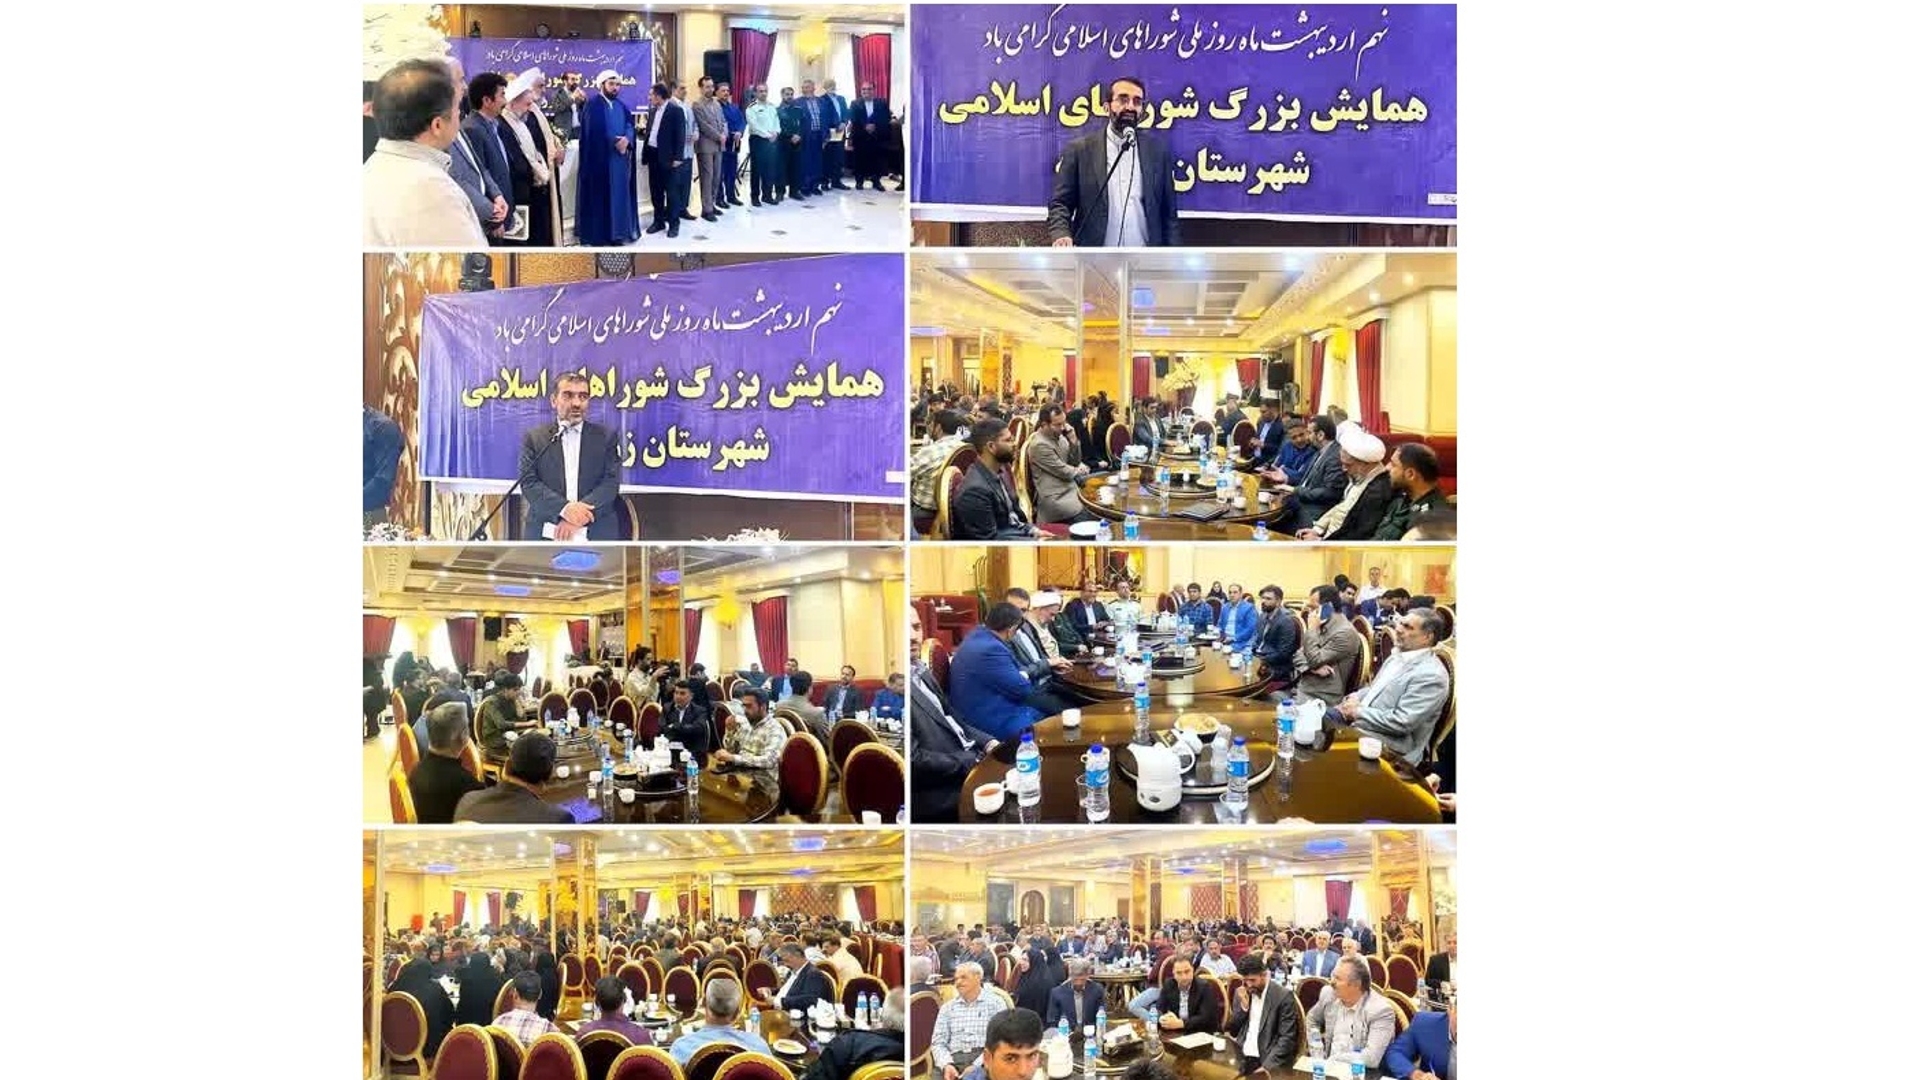 برگزاری همایش گرامیداشت هفته ی شوراهای اسلامی در شهرستان زرندیه